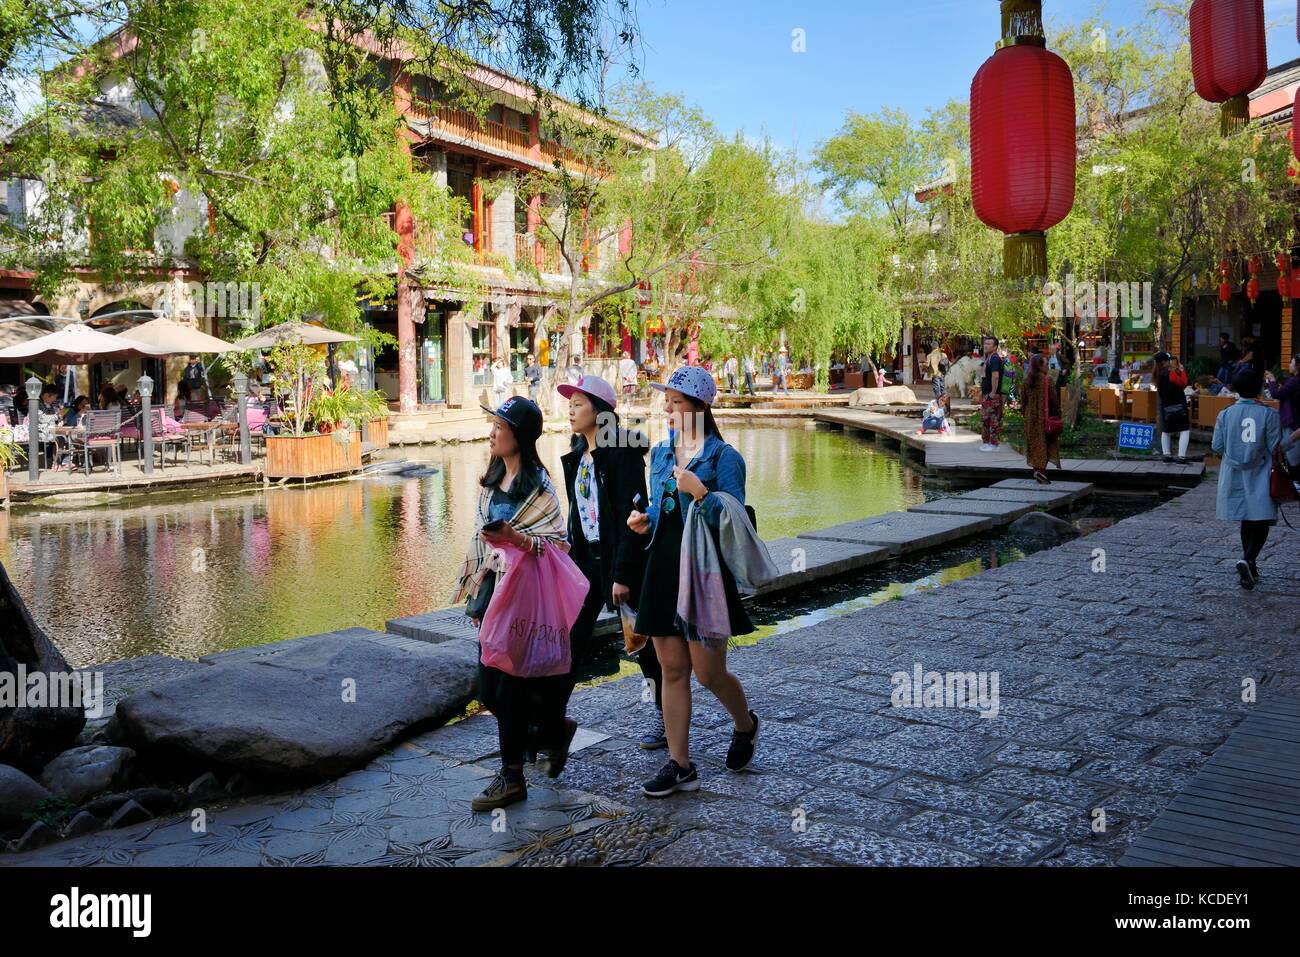 Shuhe Altstadt Weltkulturerbe, Provinz Yunnan, China. naxi ethnischen Menschen antike Stätte in Lijiang. Tee Zimmer und Souvenirläden street scene Stockfoto